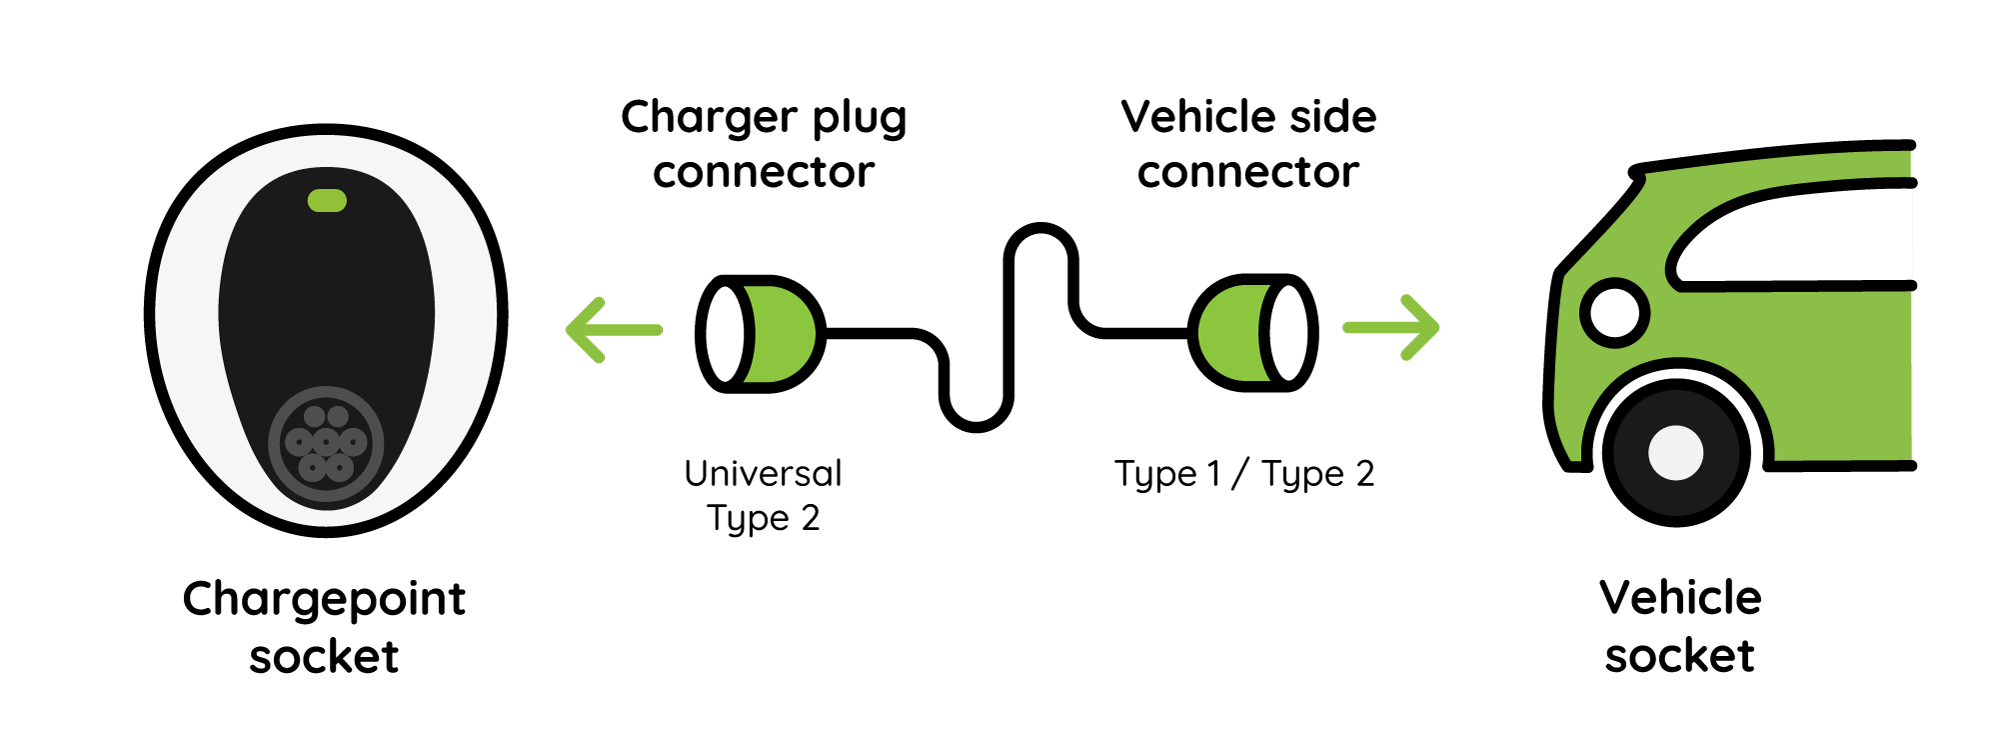 Ev Connector Type